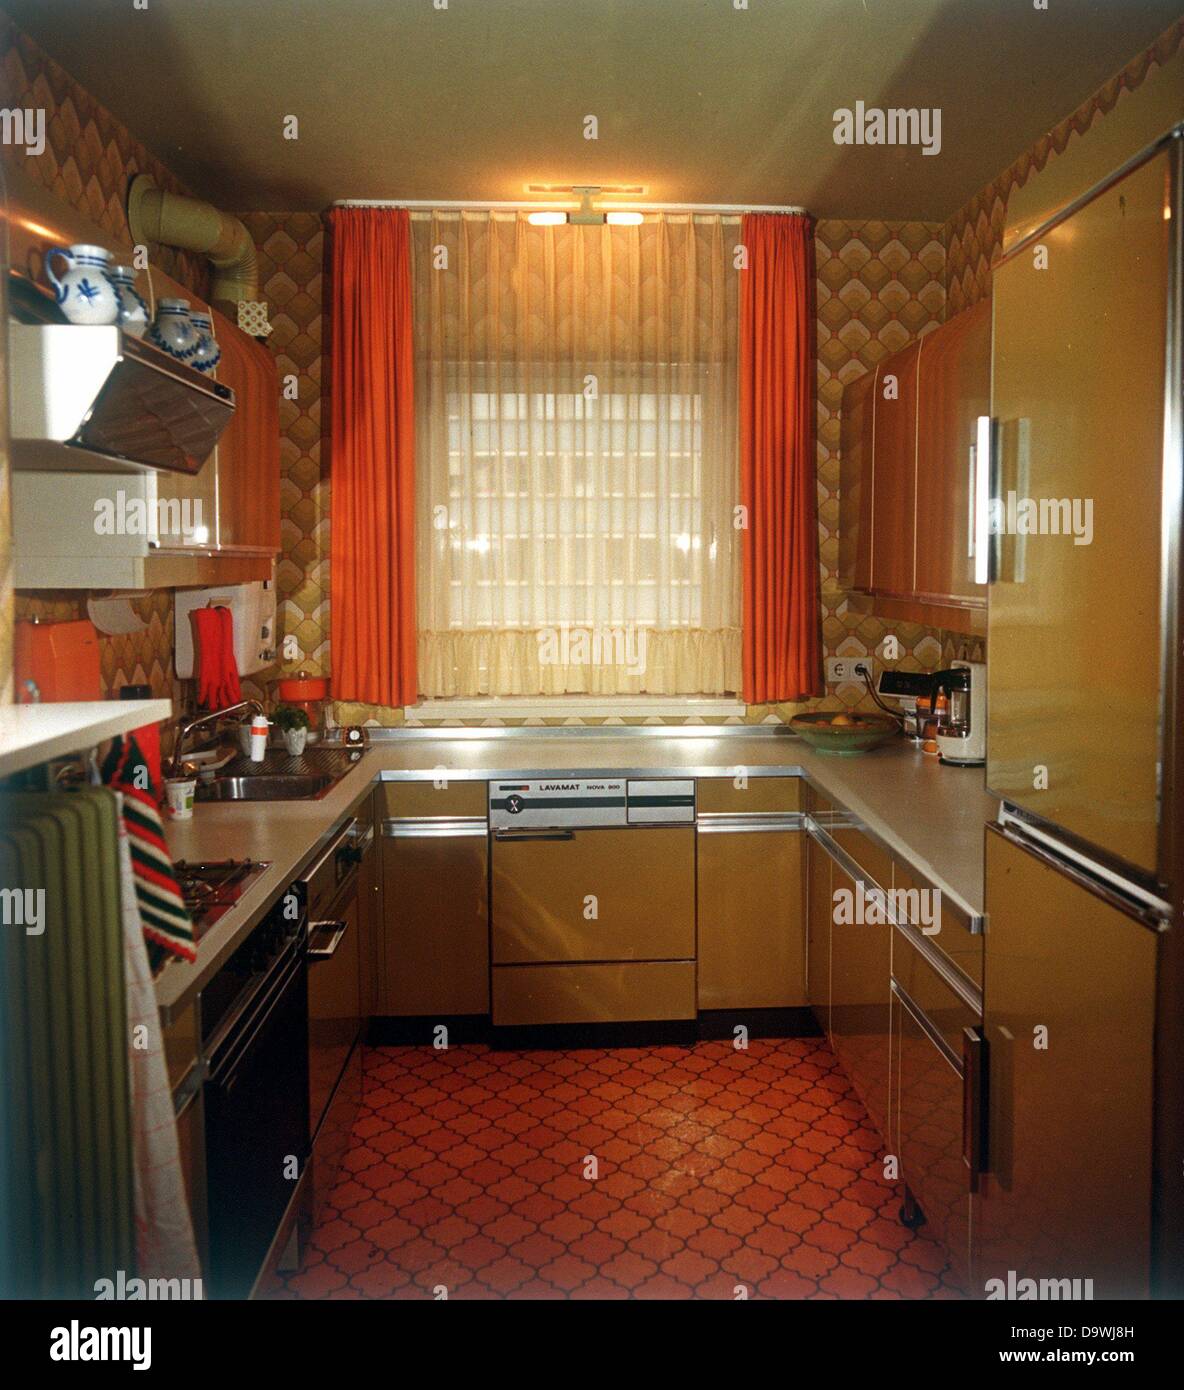 En vue d''une cuisine moderne intégrée dans la région de orange et beige à partir des années 1970. Banque D'Images